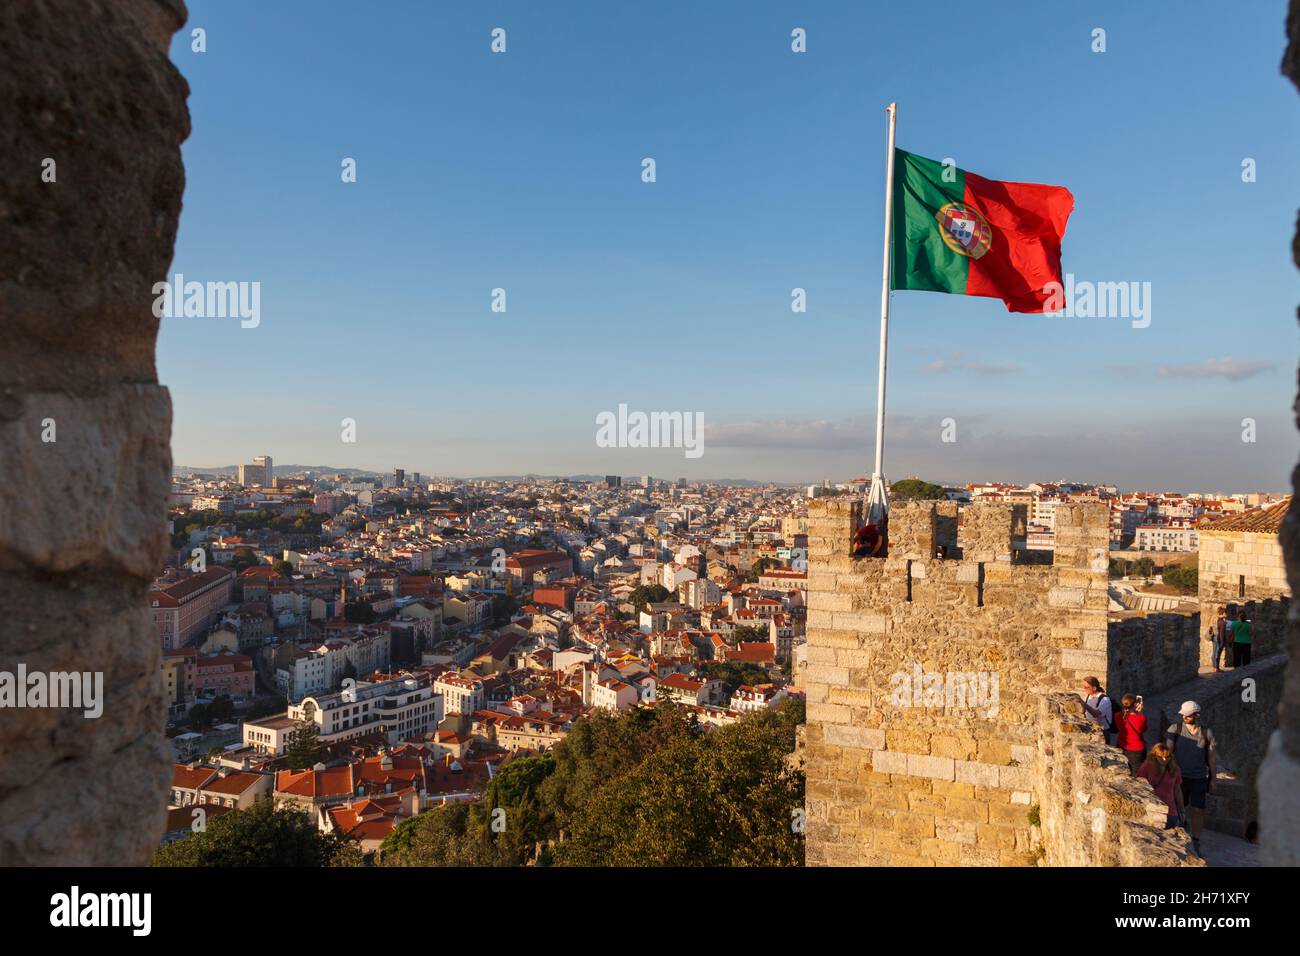 Lisbonne, Portugal.Vue sur la ville depuis Castelo de Sao Jorge.Drapeau portugais volant de la tour. Banque D'Images